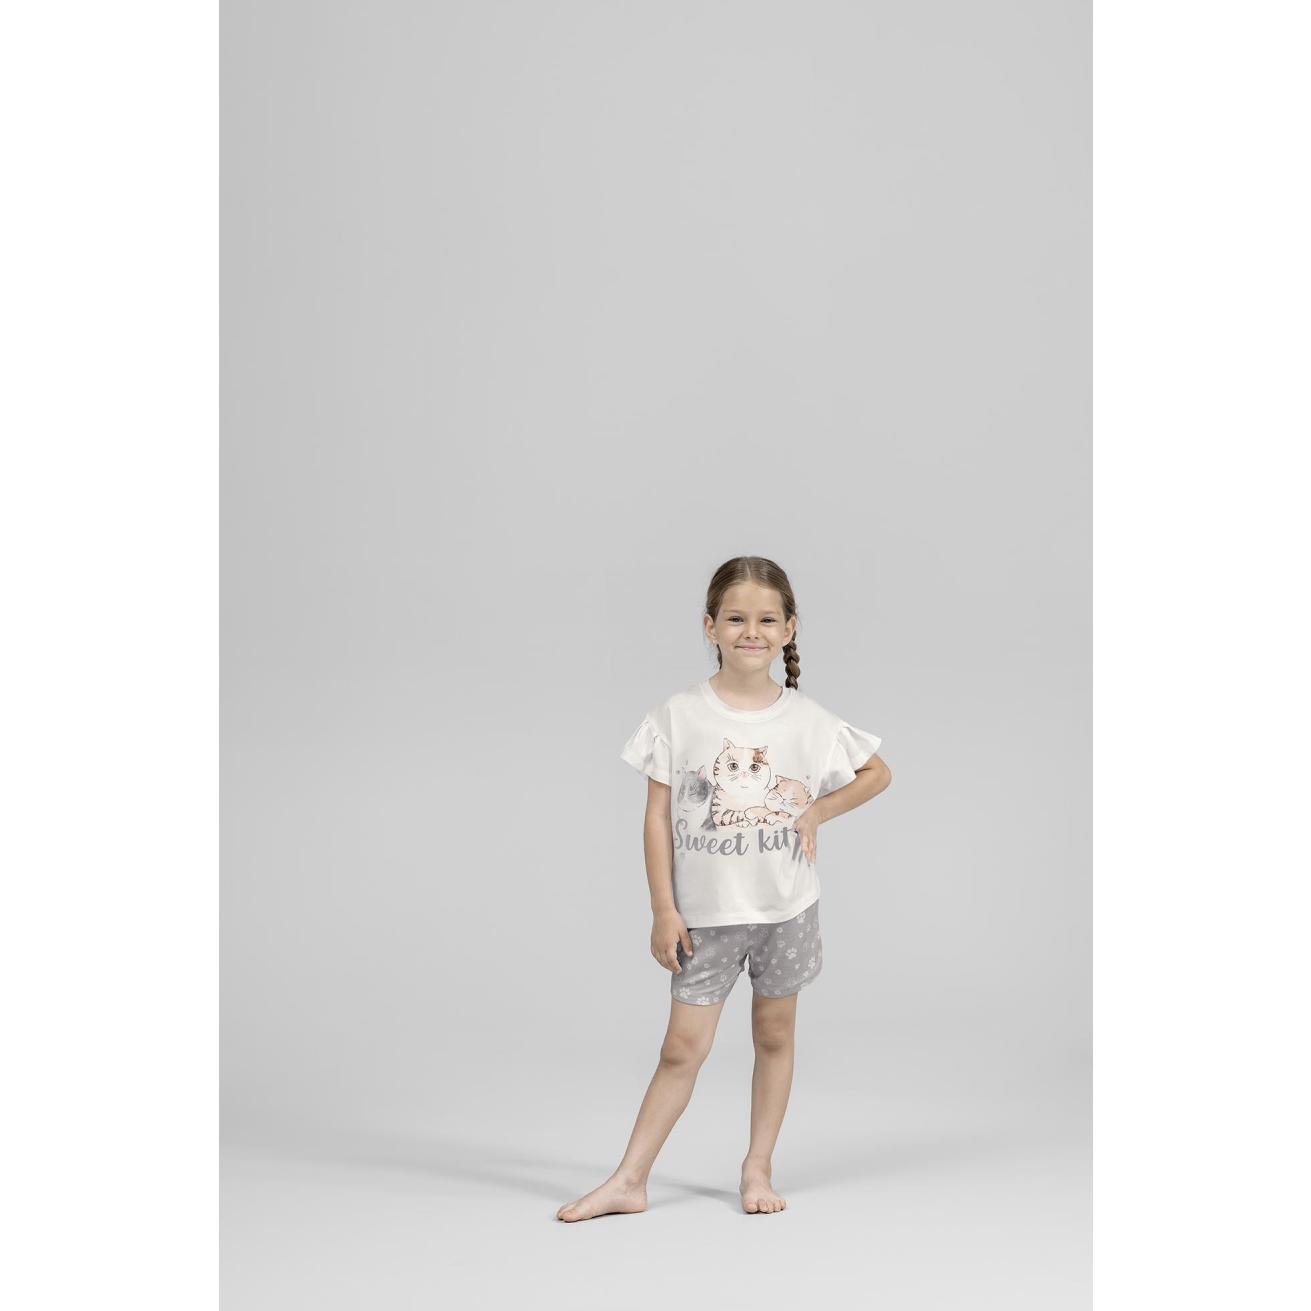 Пижама для девочек Kids by togas Китти бело-серая 116-122 см, цвет белый, размер 116-122 см - фото 4